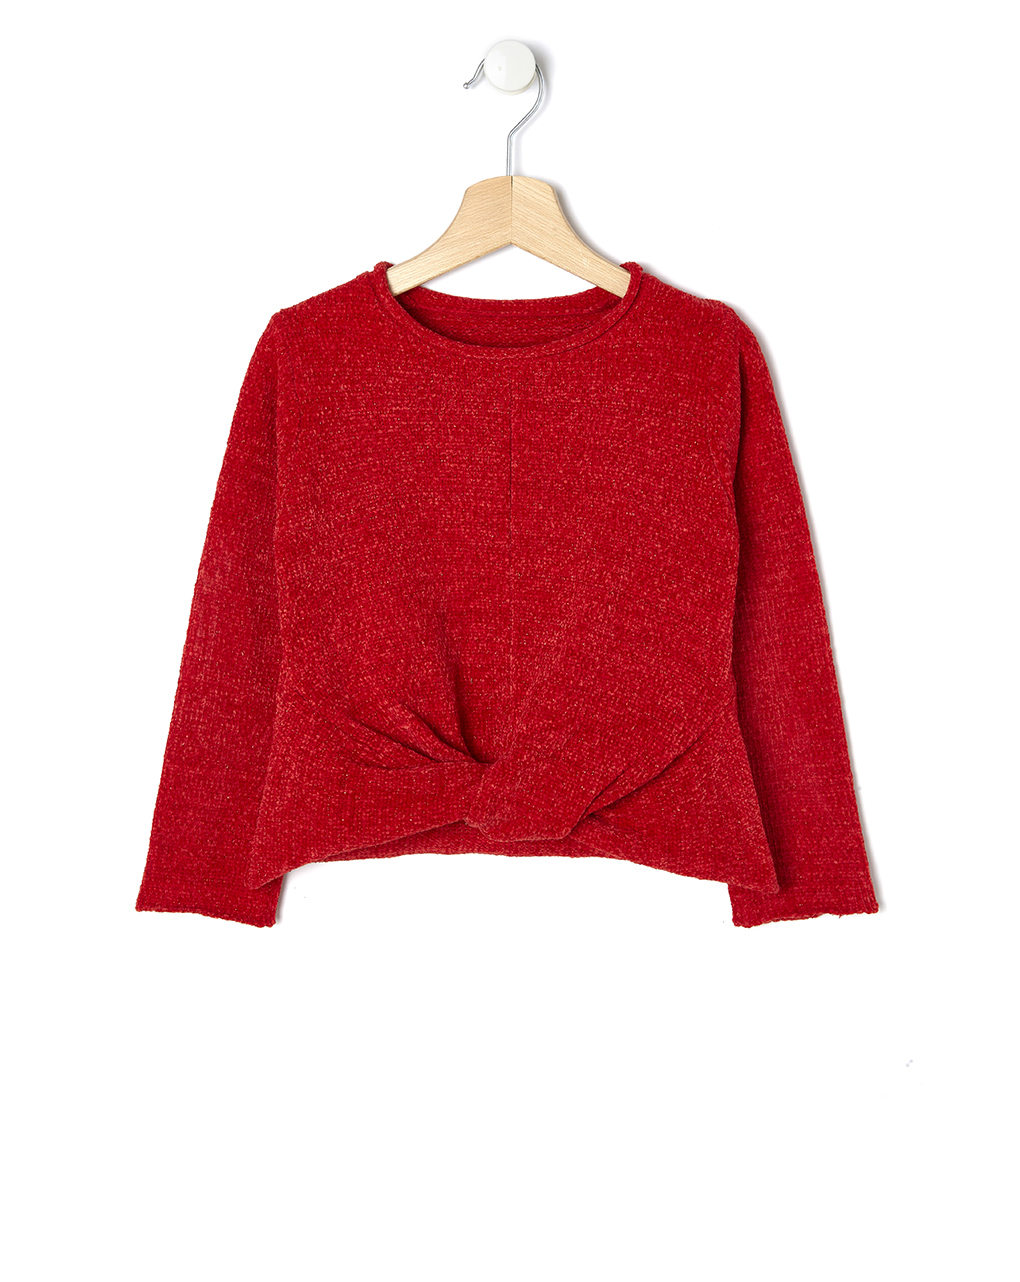 μπλούζα πλεκτή σενίλ κόκκινη με lurex για κορίτσι - Prénatal